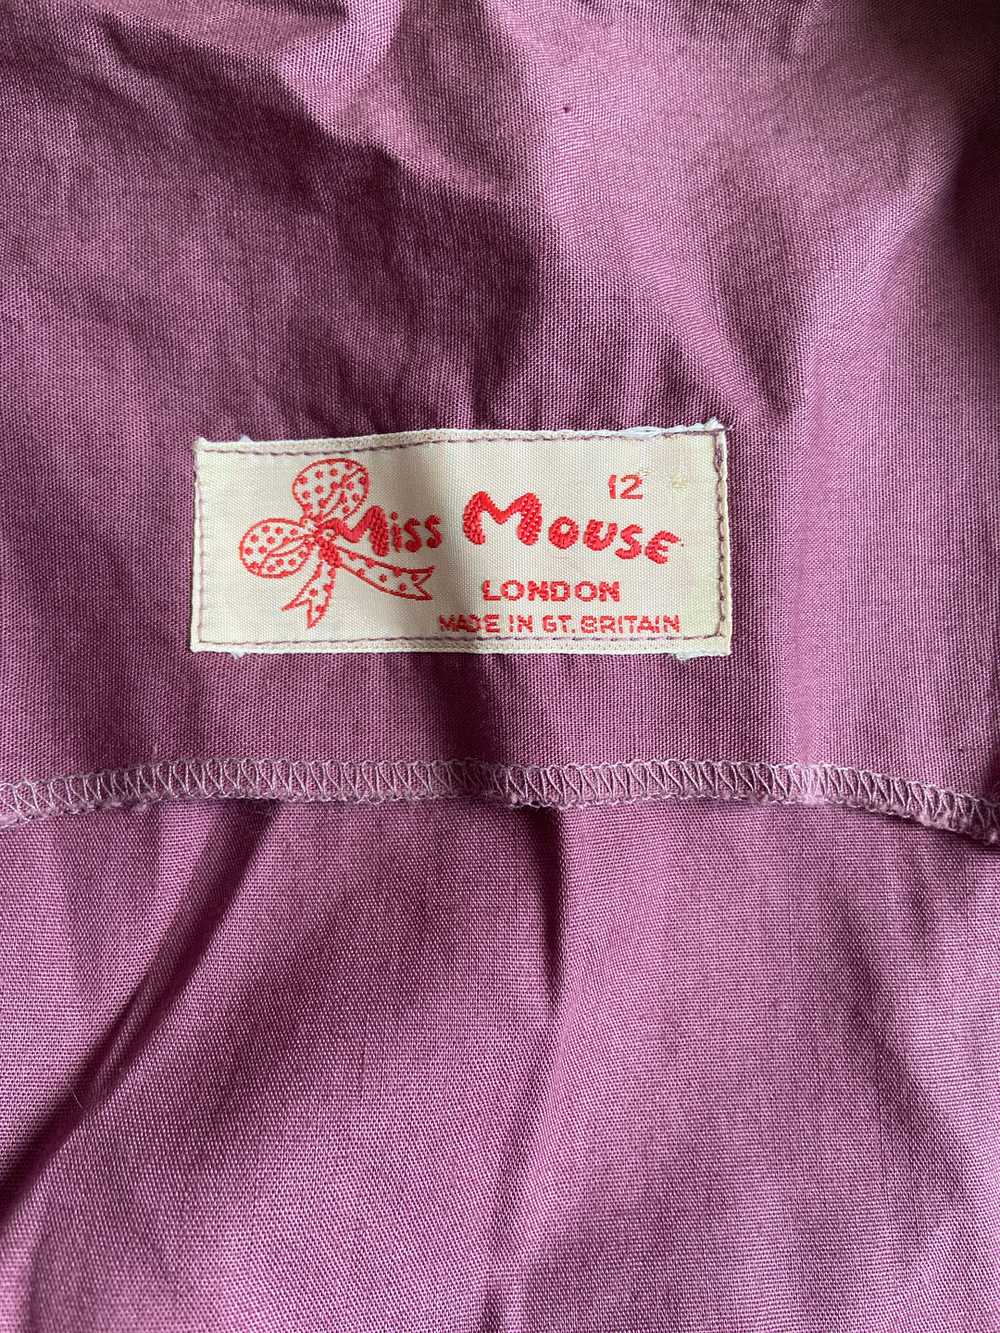 1970s British boutique Miss Mouse dress - image 8